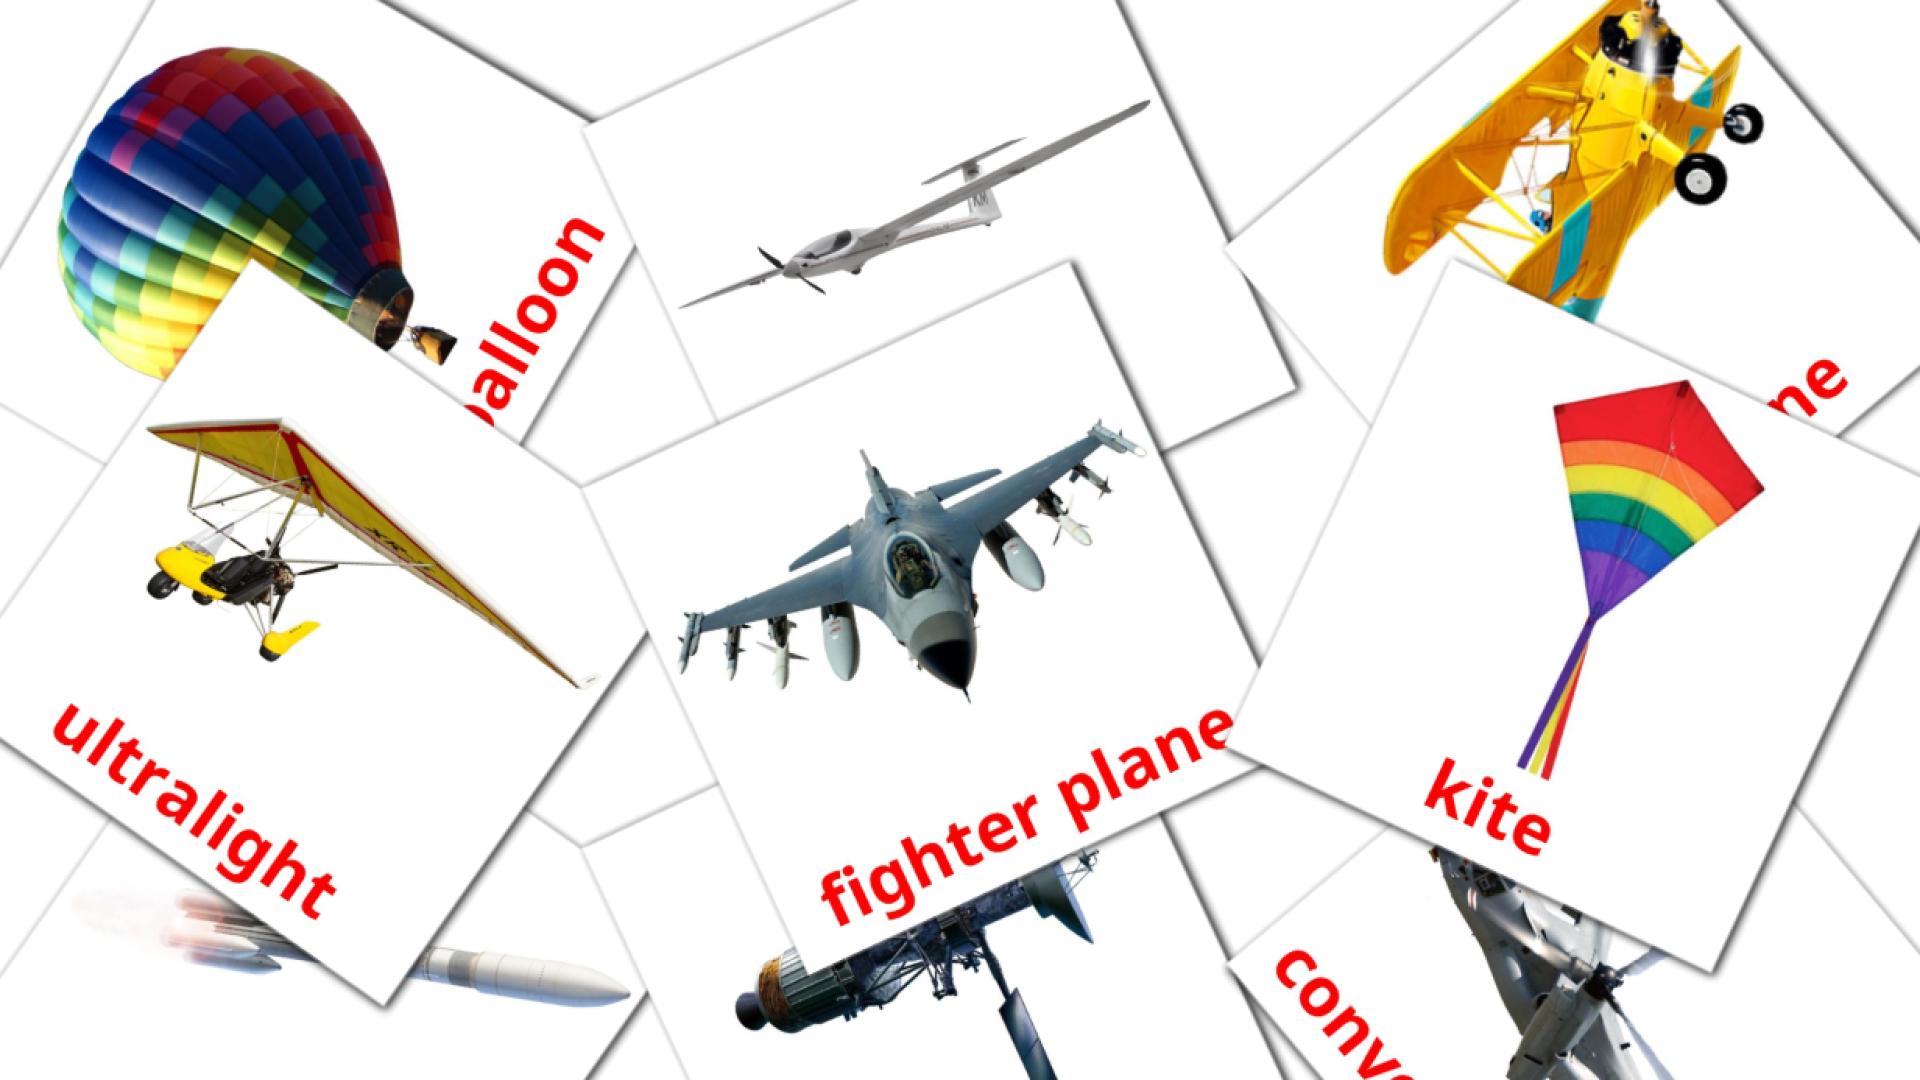 14 Bildkarten für Aircraft